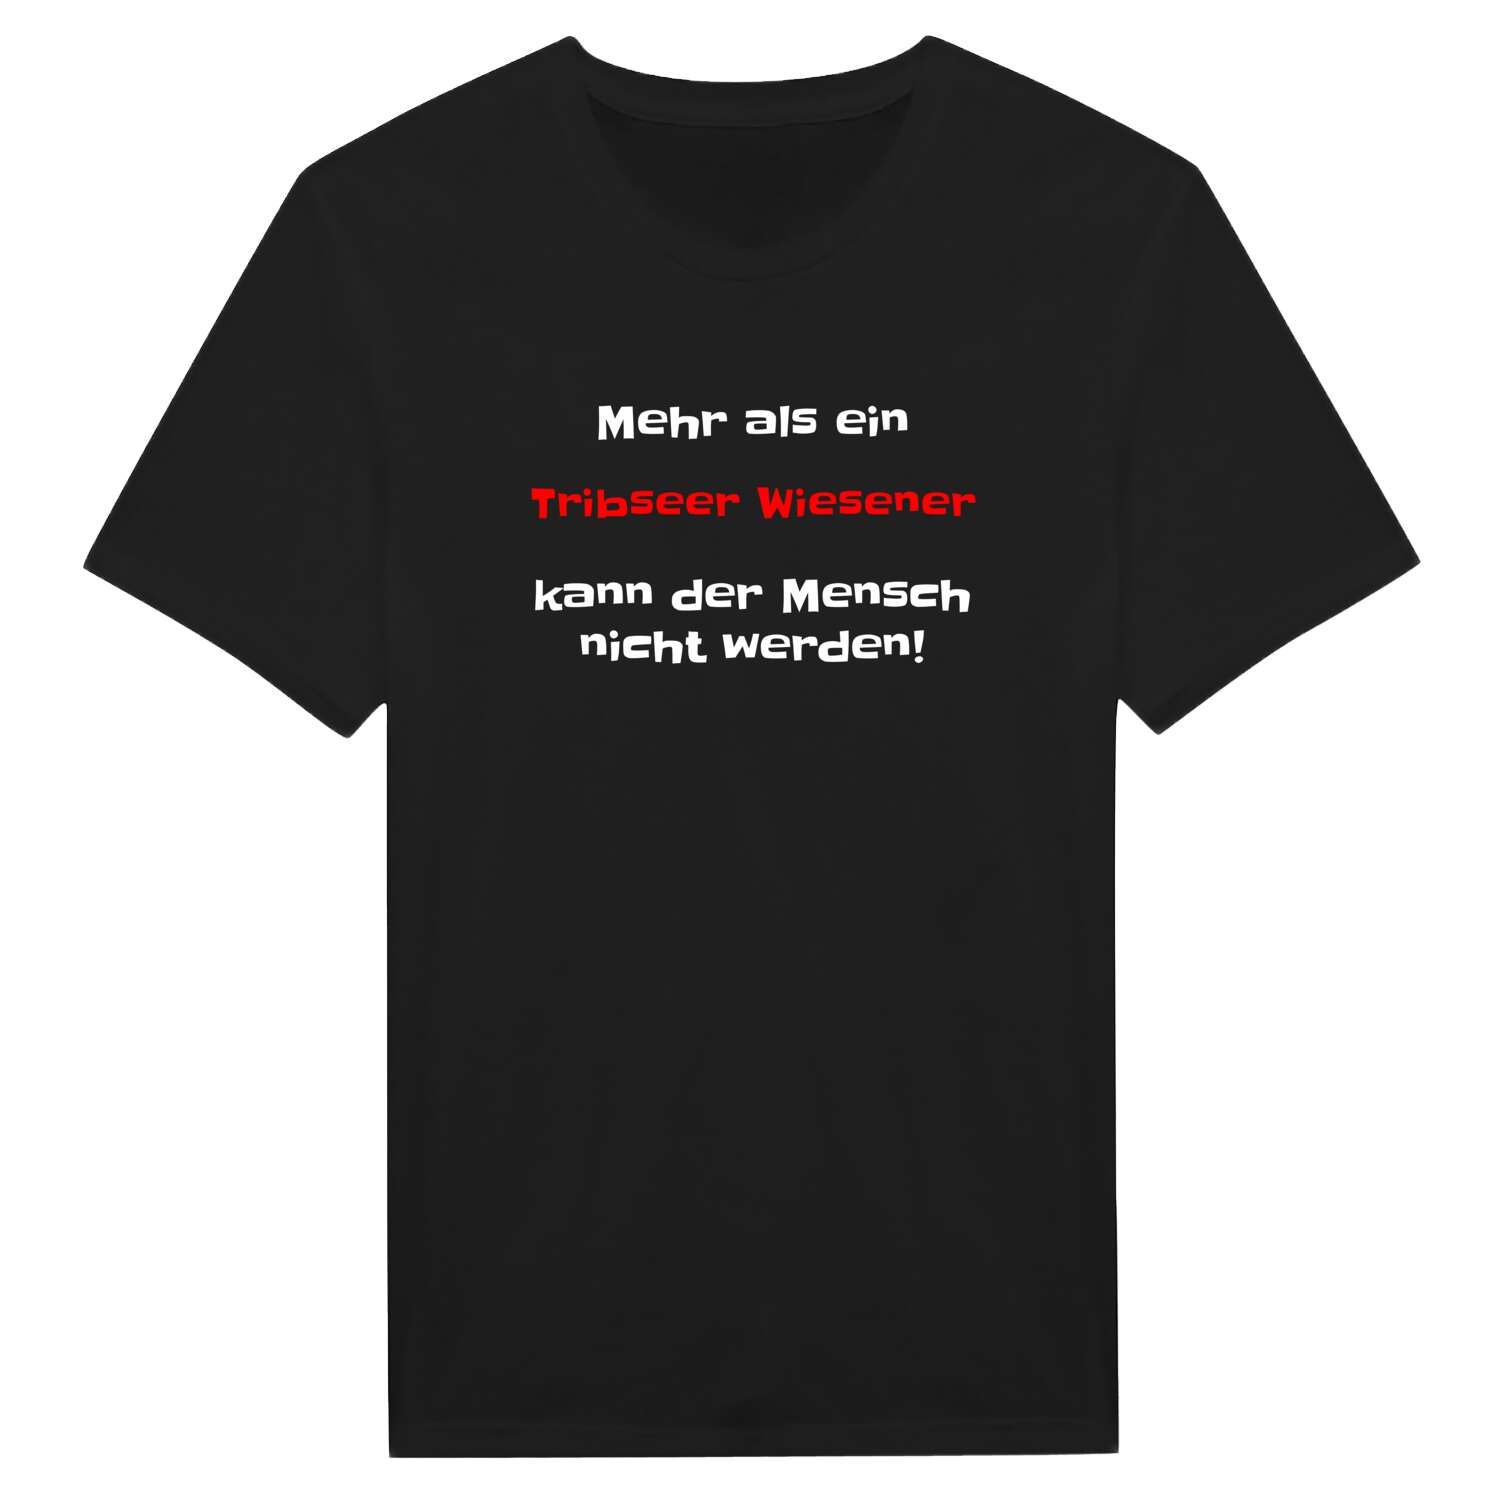 Tribseer Wiesen T-Shirt »Mehr als ein«